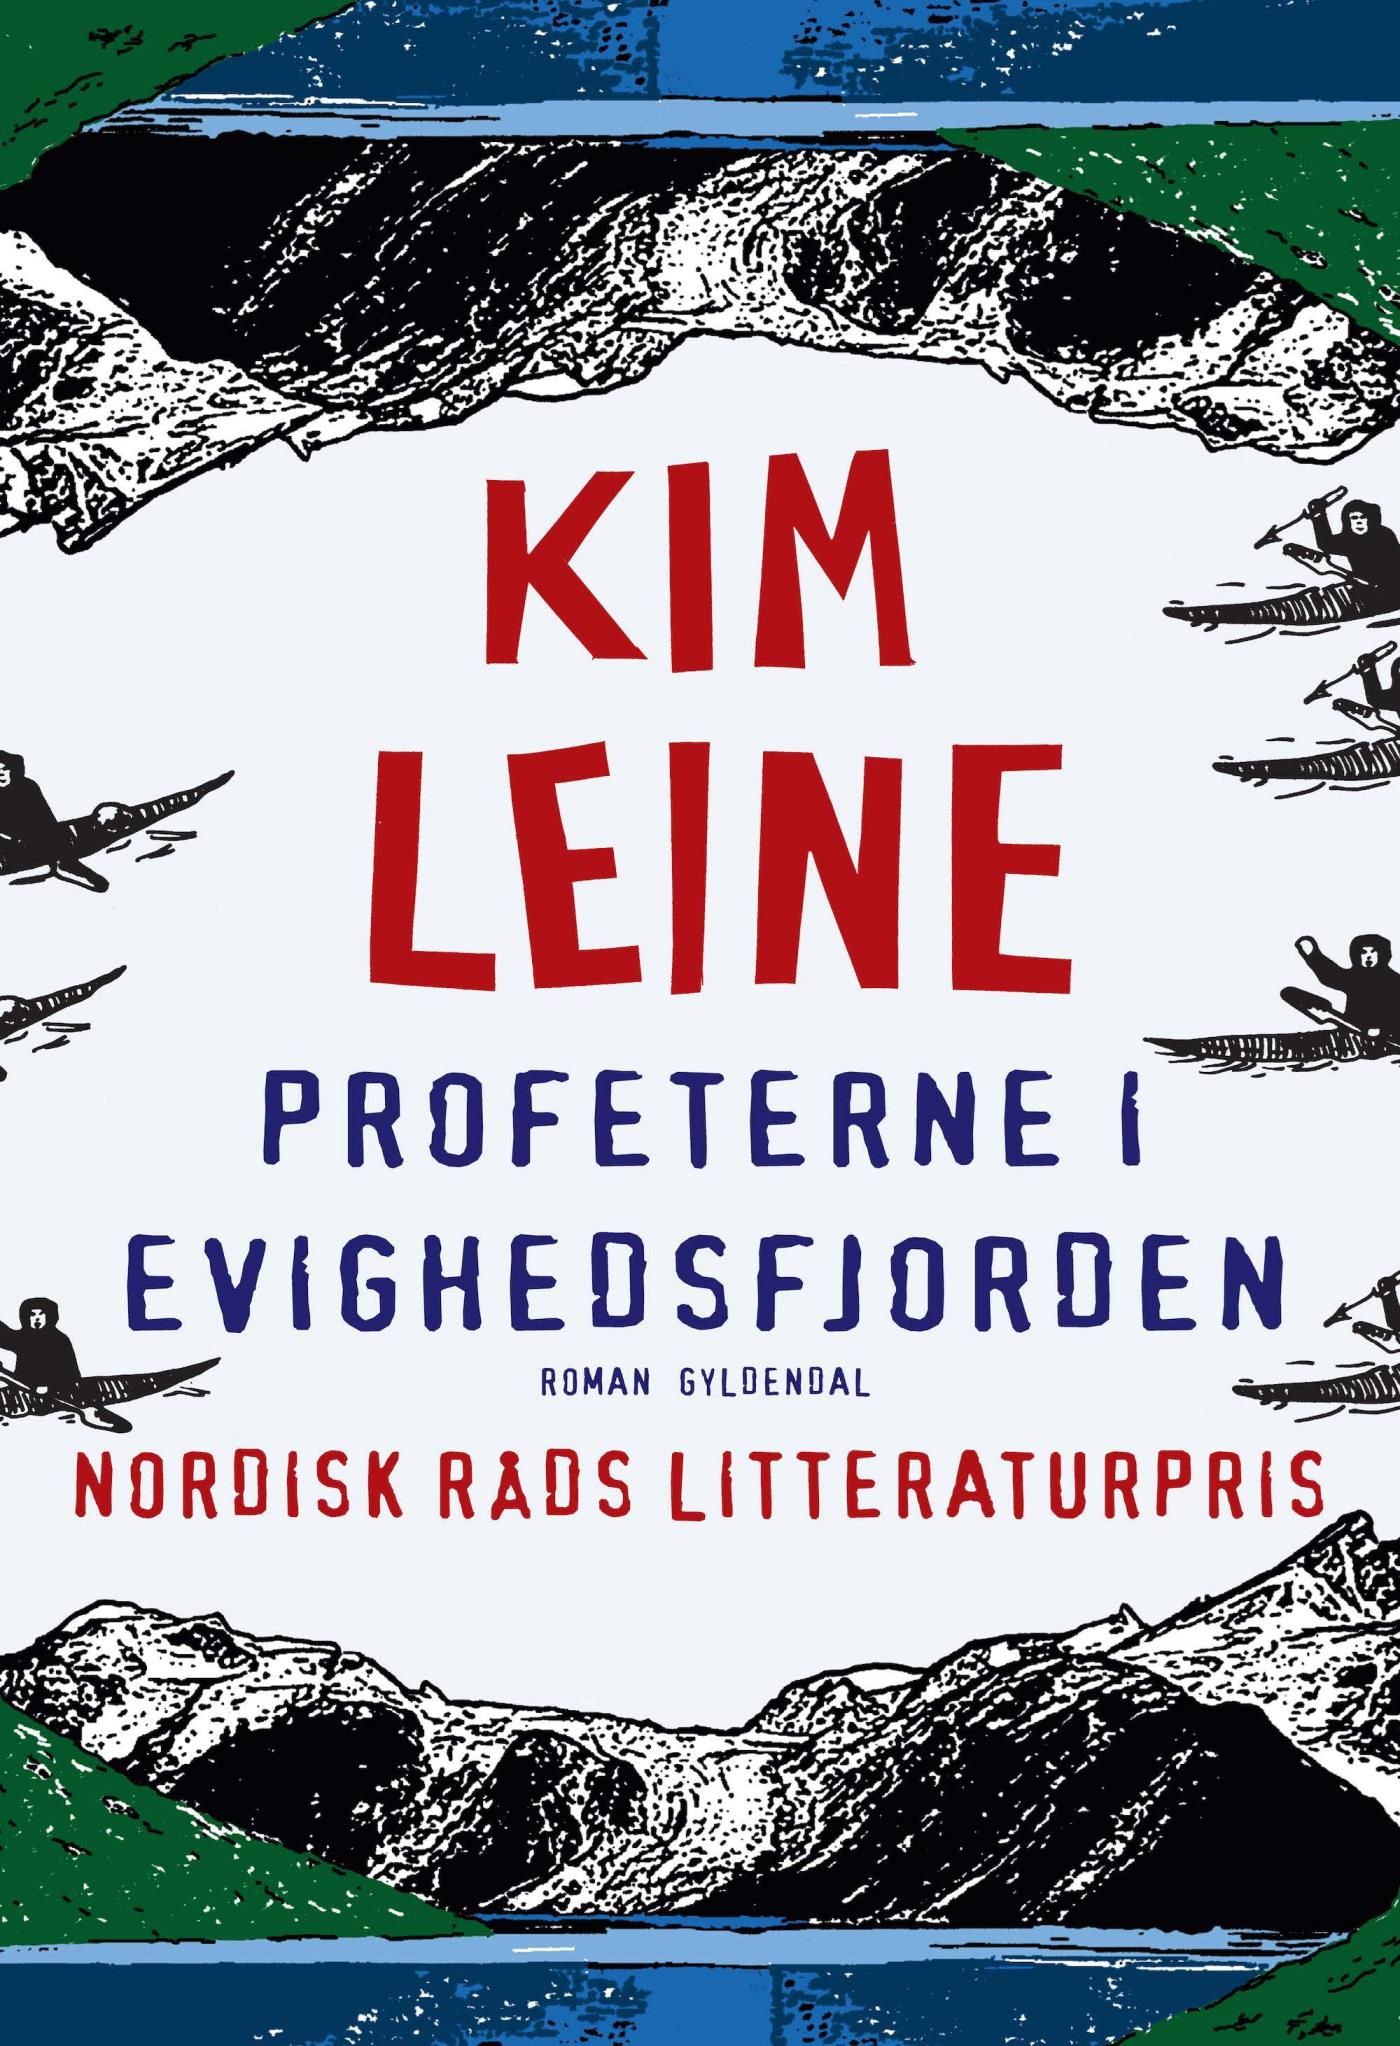 Profeterne i Evighedsfjorden, e-bog af Kim Leine